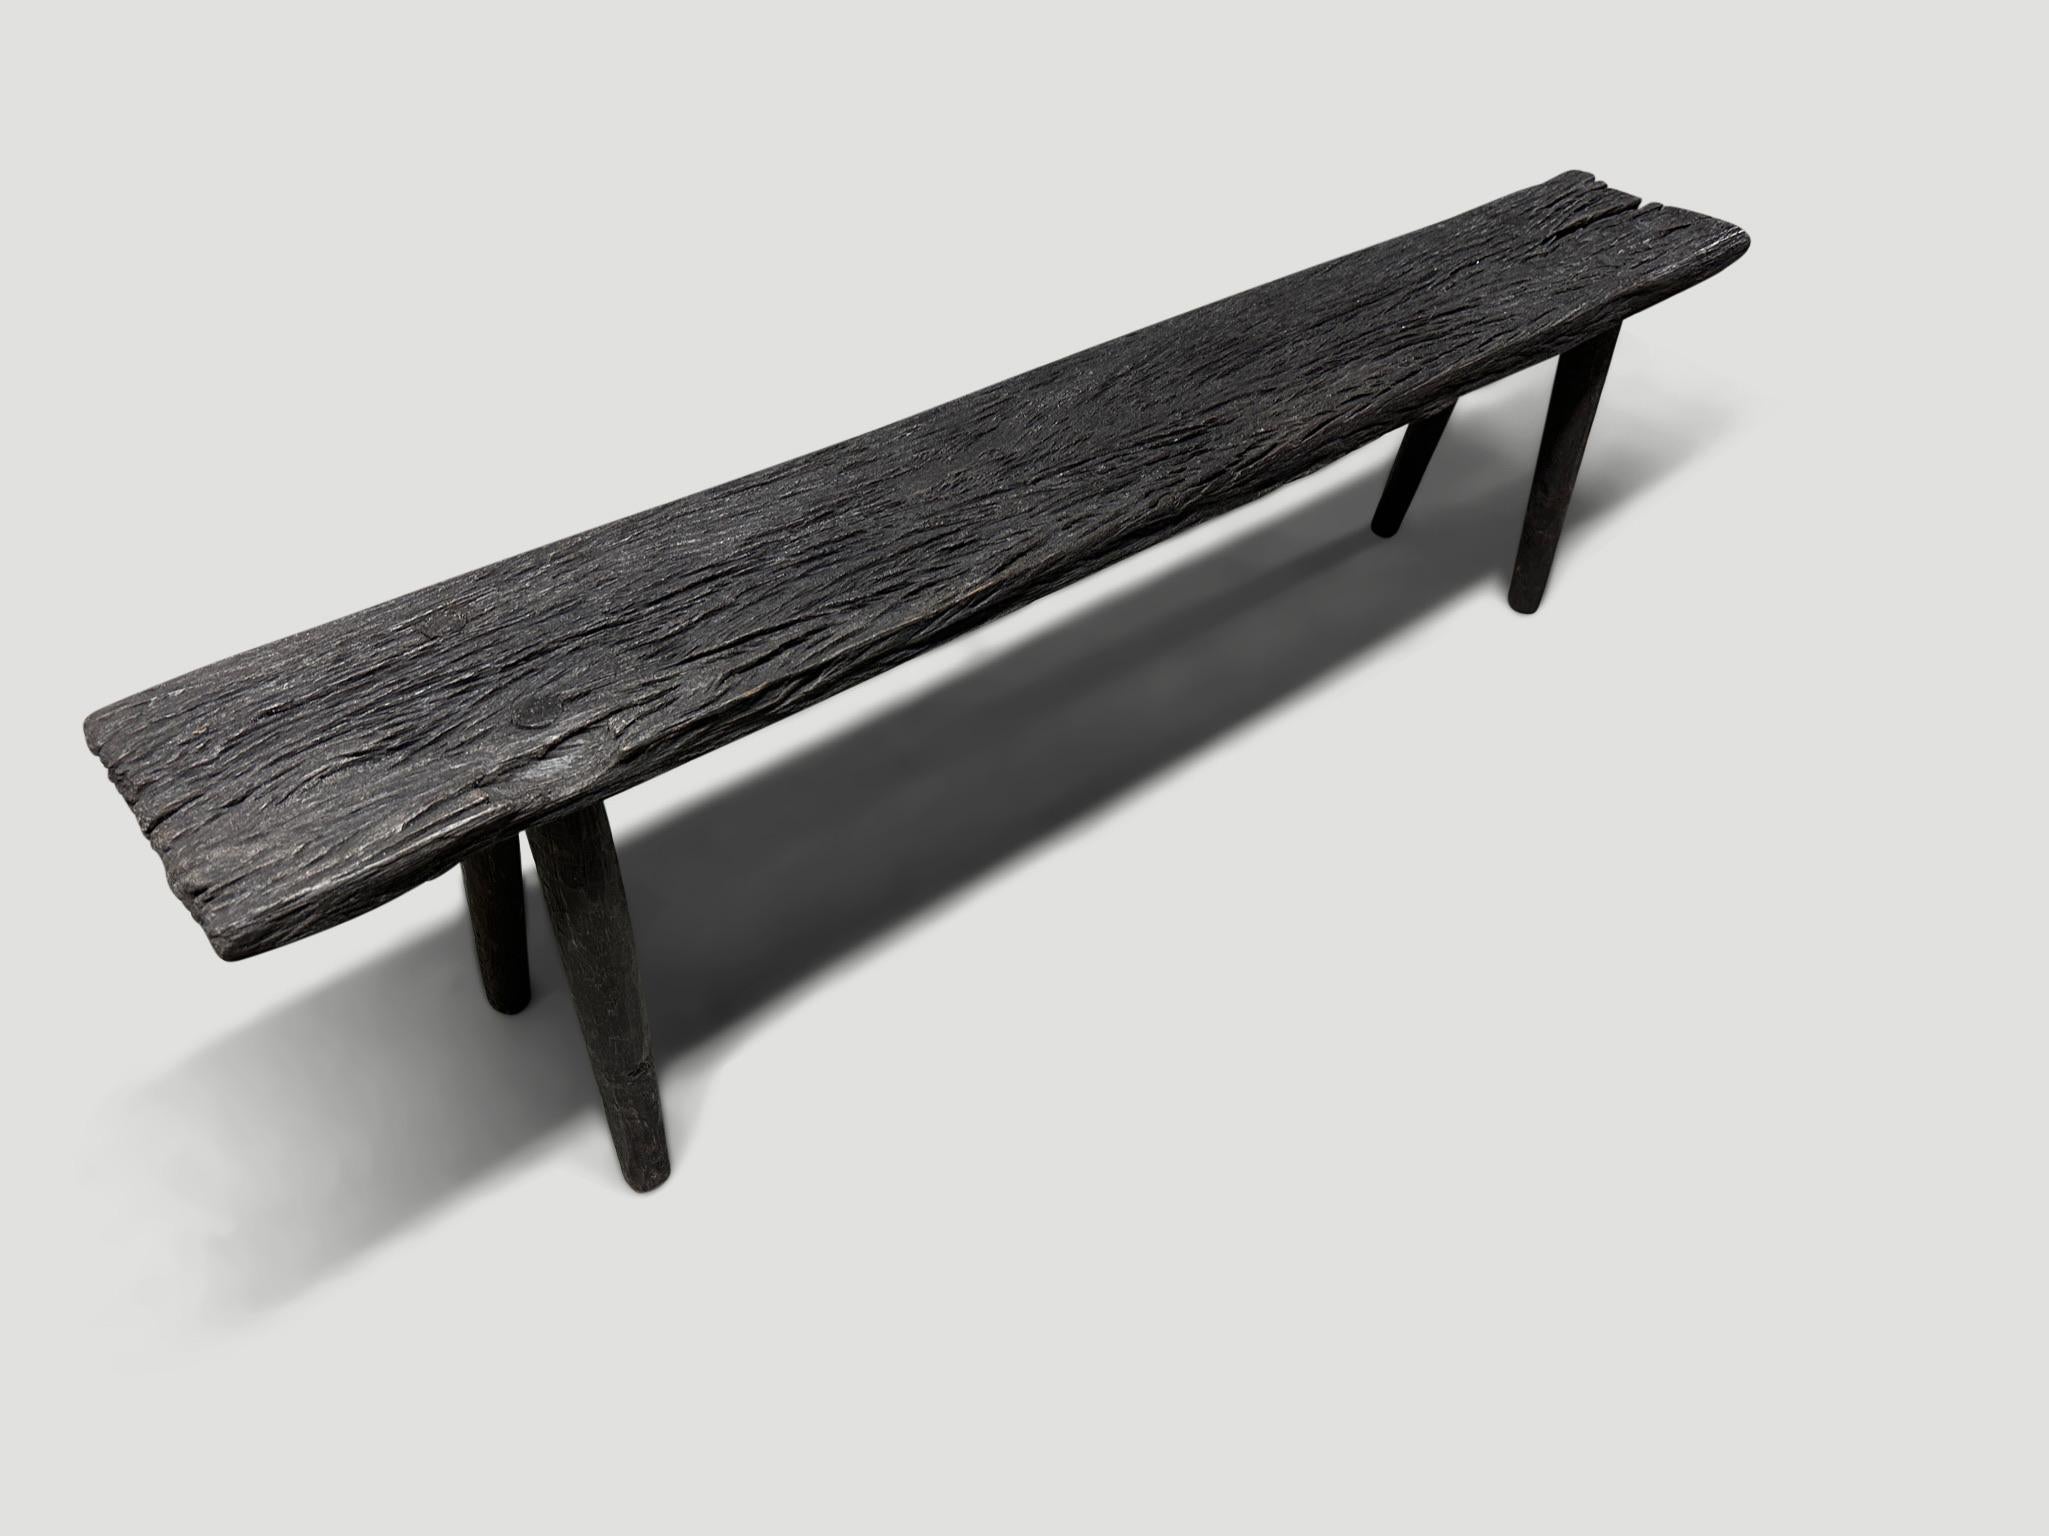 Schöne minimalistische Eisenholzbank, auch bekannt als Ulin-Holz. Gekohlt, geschliffen und versiegelt, wobei die schöne Holzmaserung zum Vorschein kommt. Wir haben minimalistische Beine aus glatten Teakholzzylindern hinzugefügt. Es kommt auf die